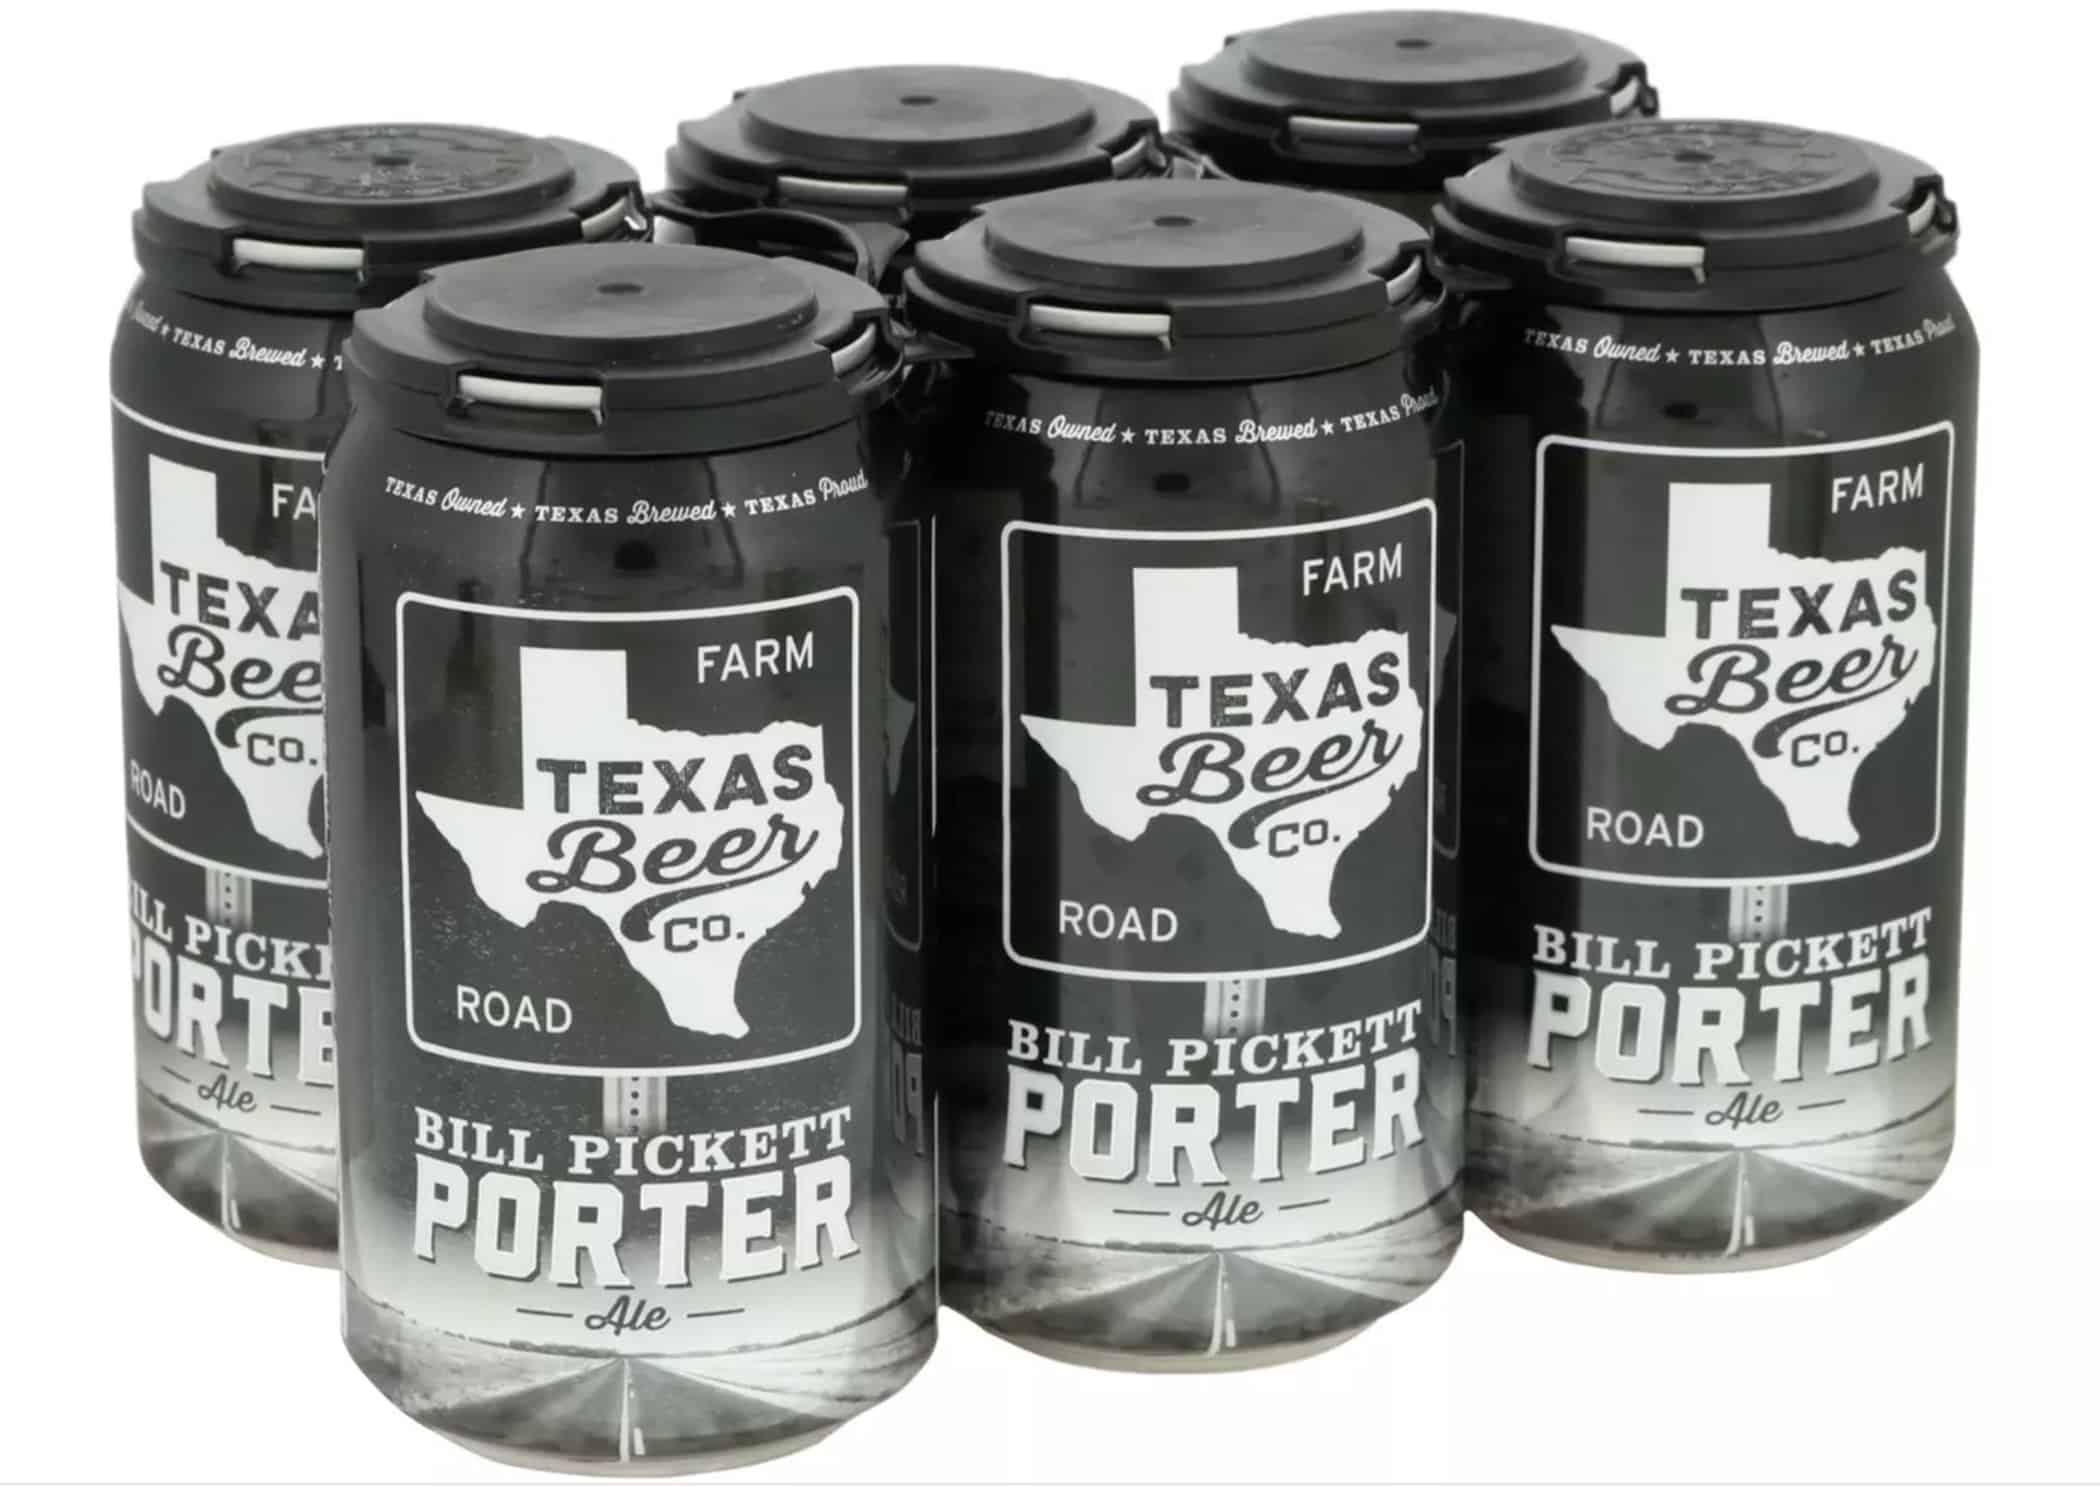 020824 Texas Beer Company Bill Pickett Porter